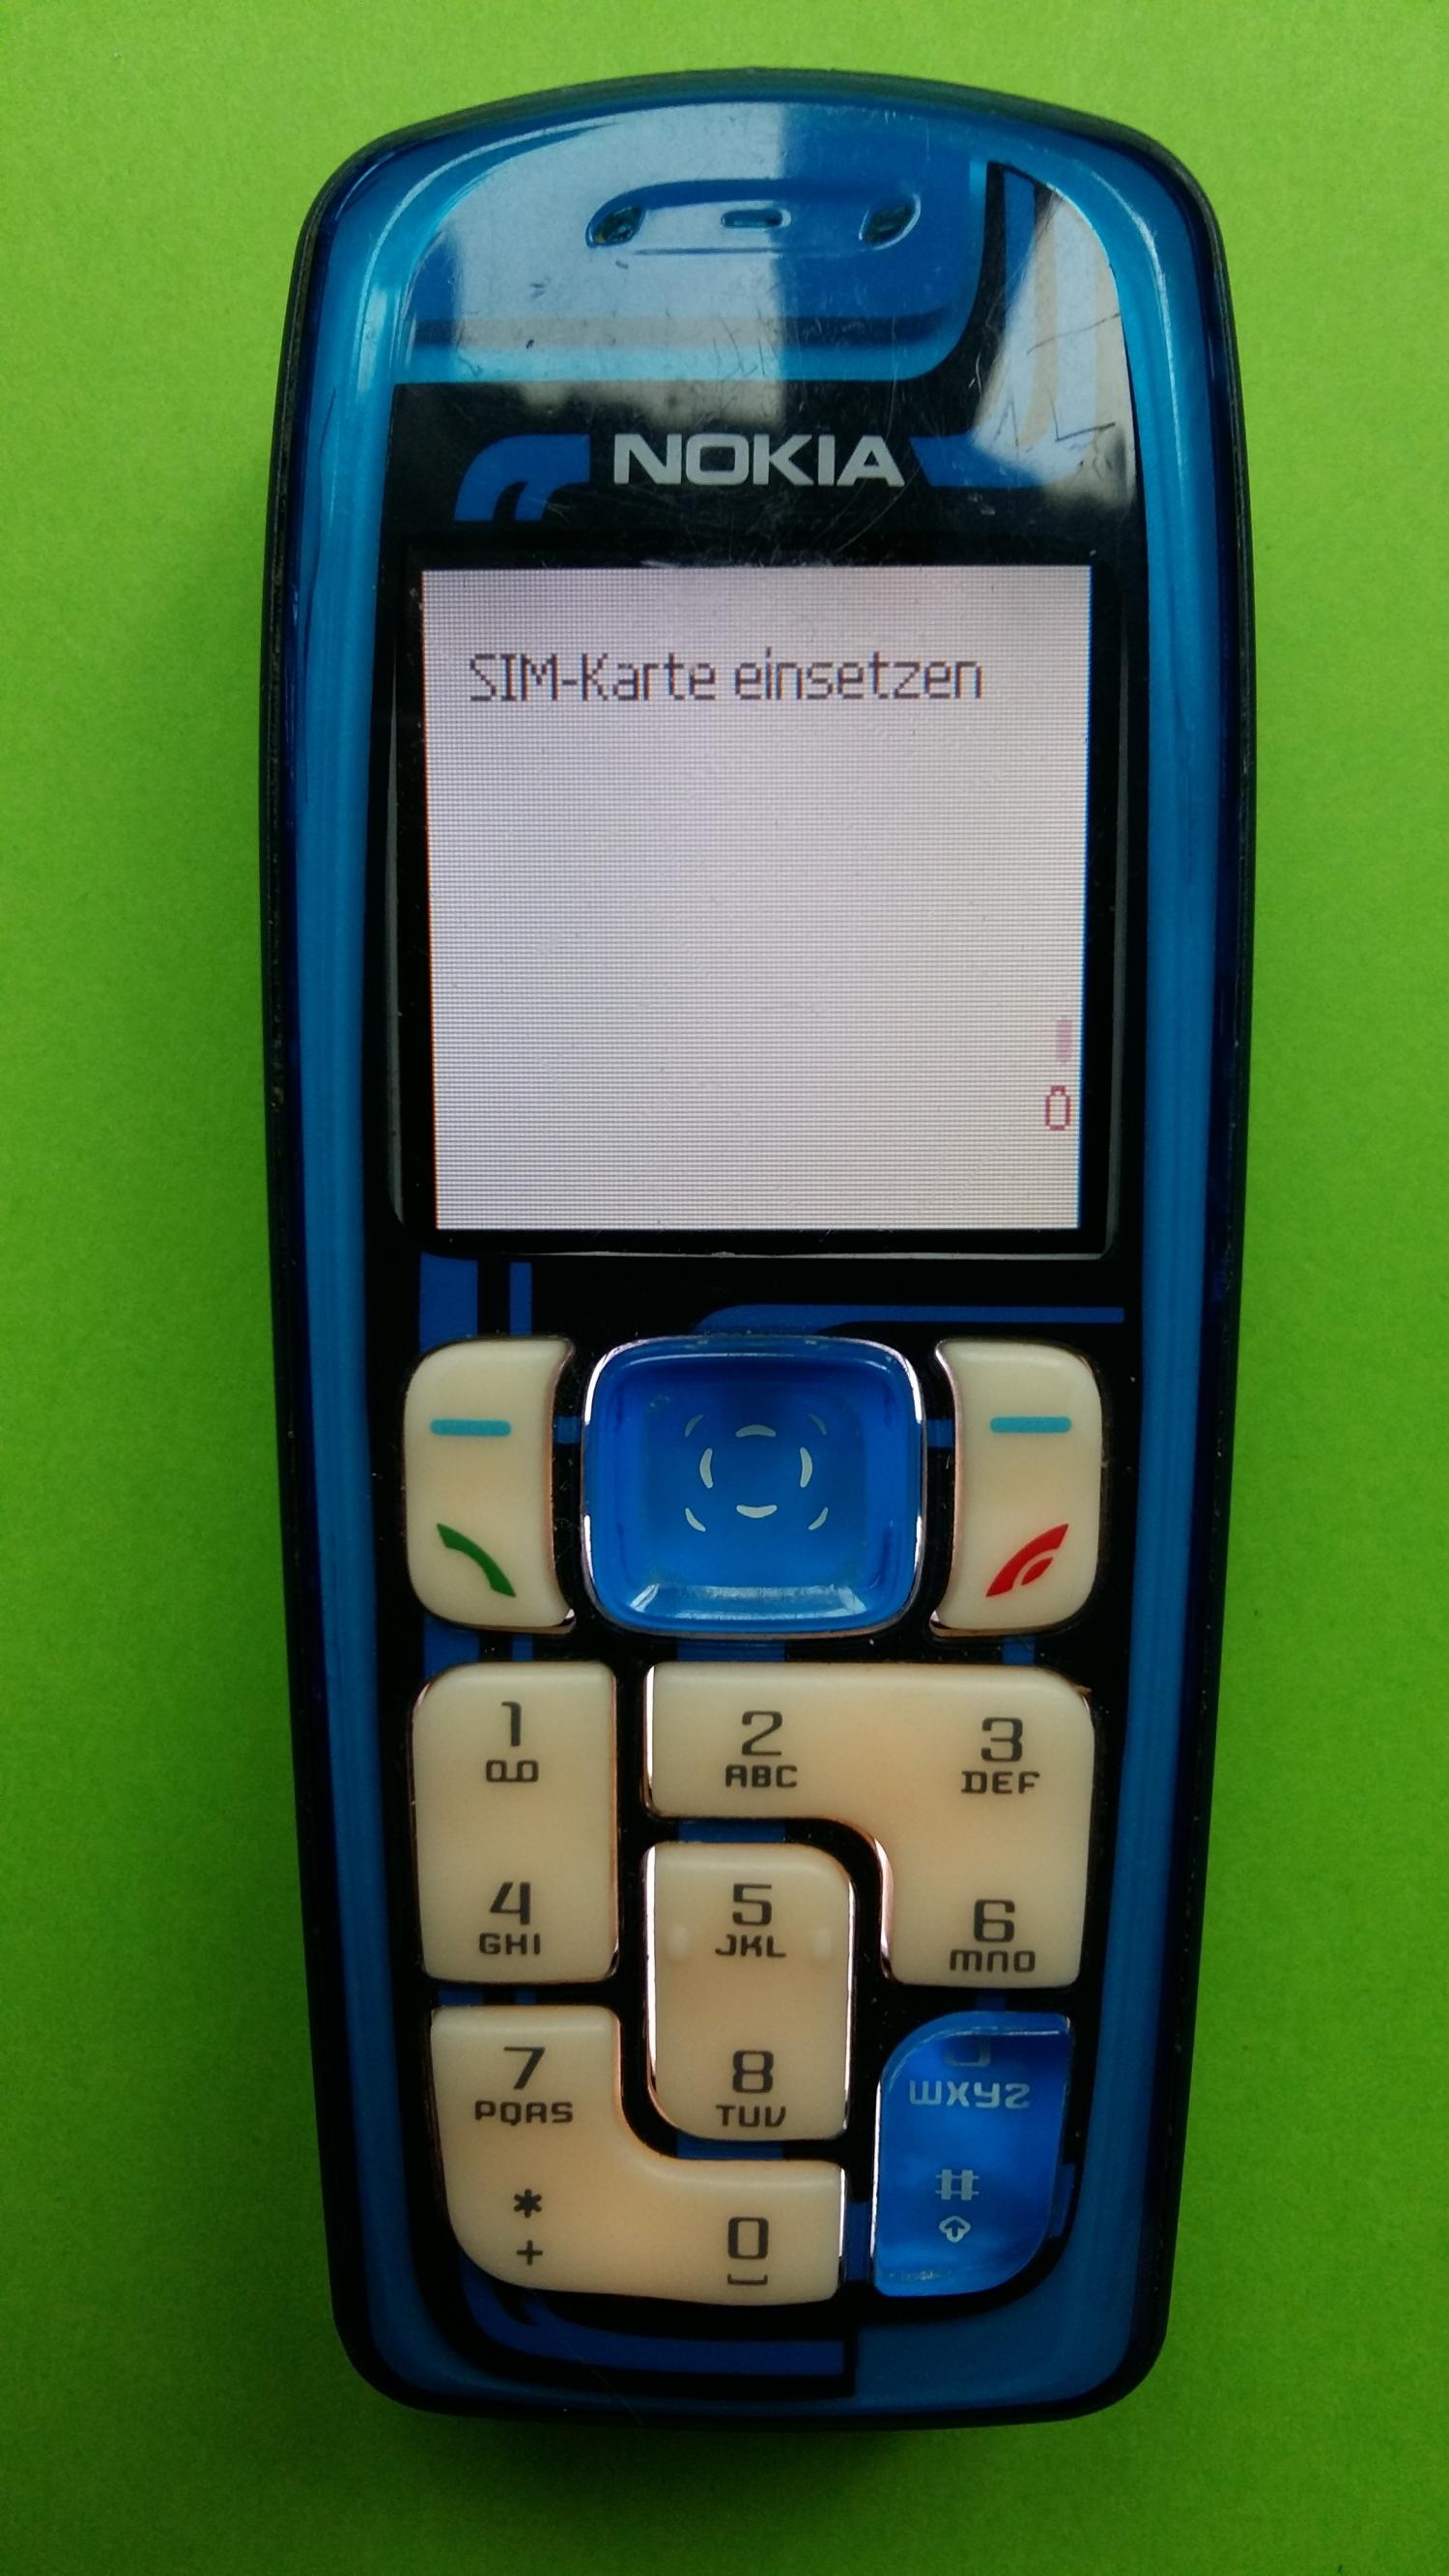 image-7321137-Nokia 3100 (4)1.jpg